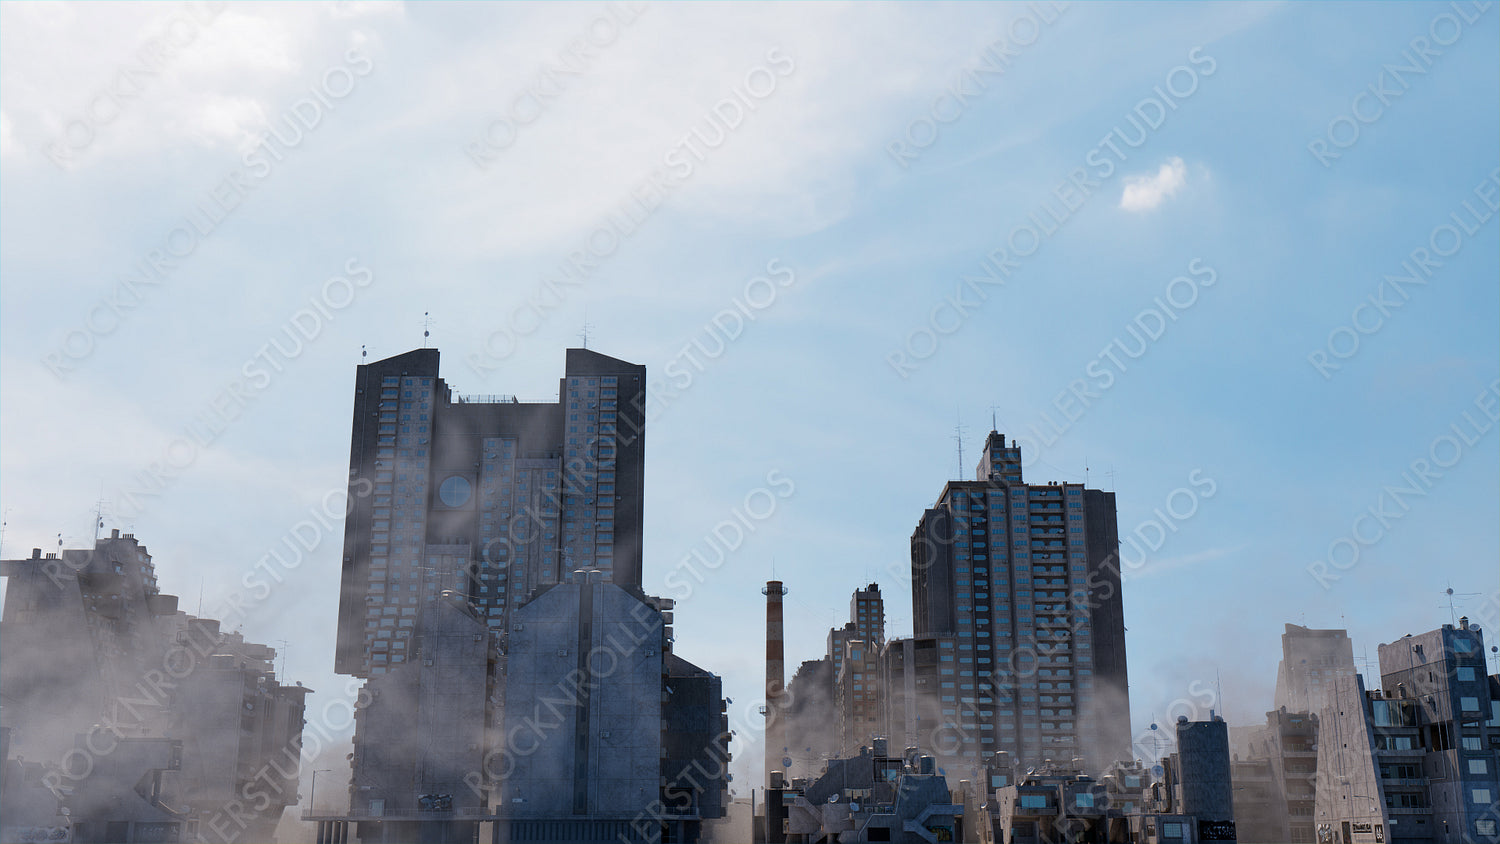 Concrete Metropolis. Soviet Brutalist Architecture against a Hazy Afternoon Sky.